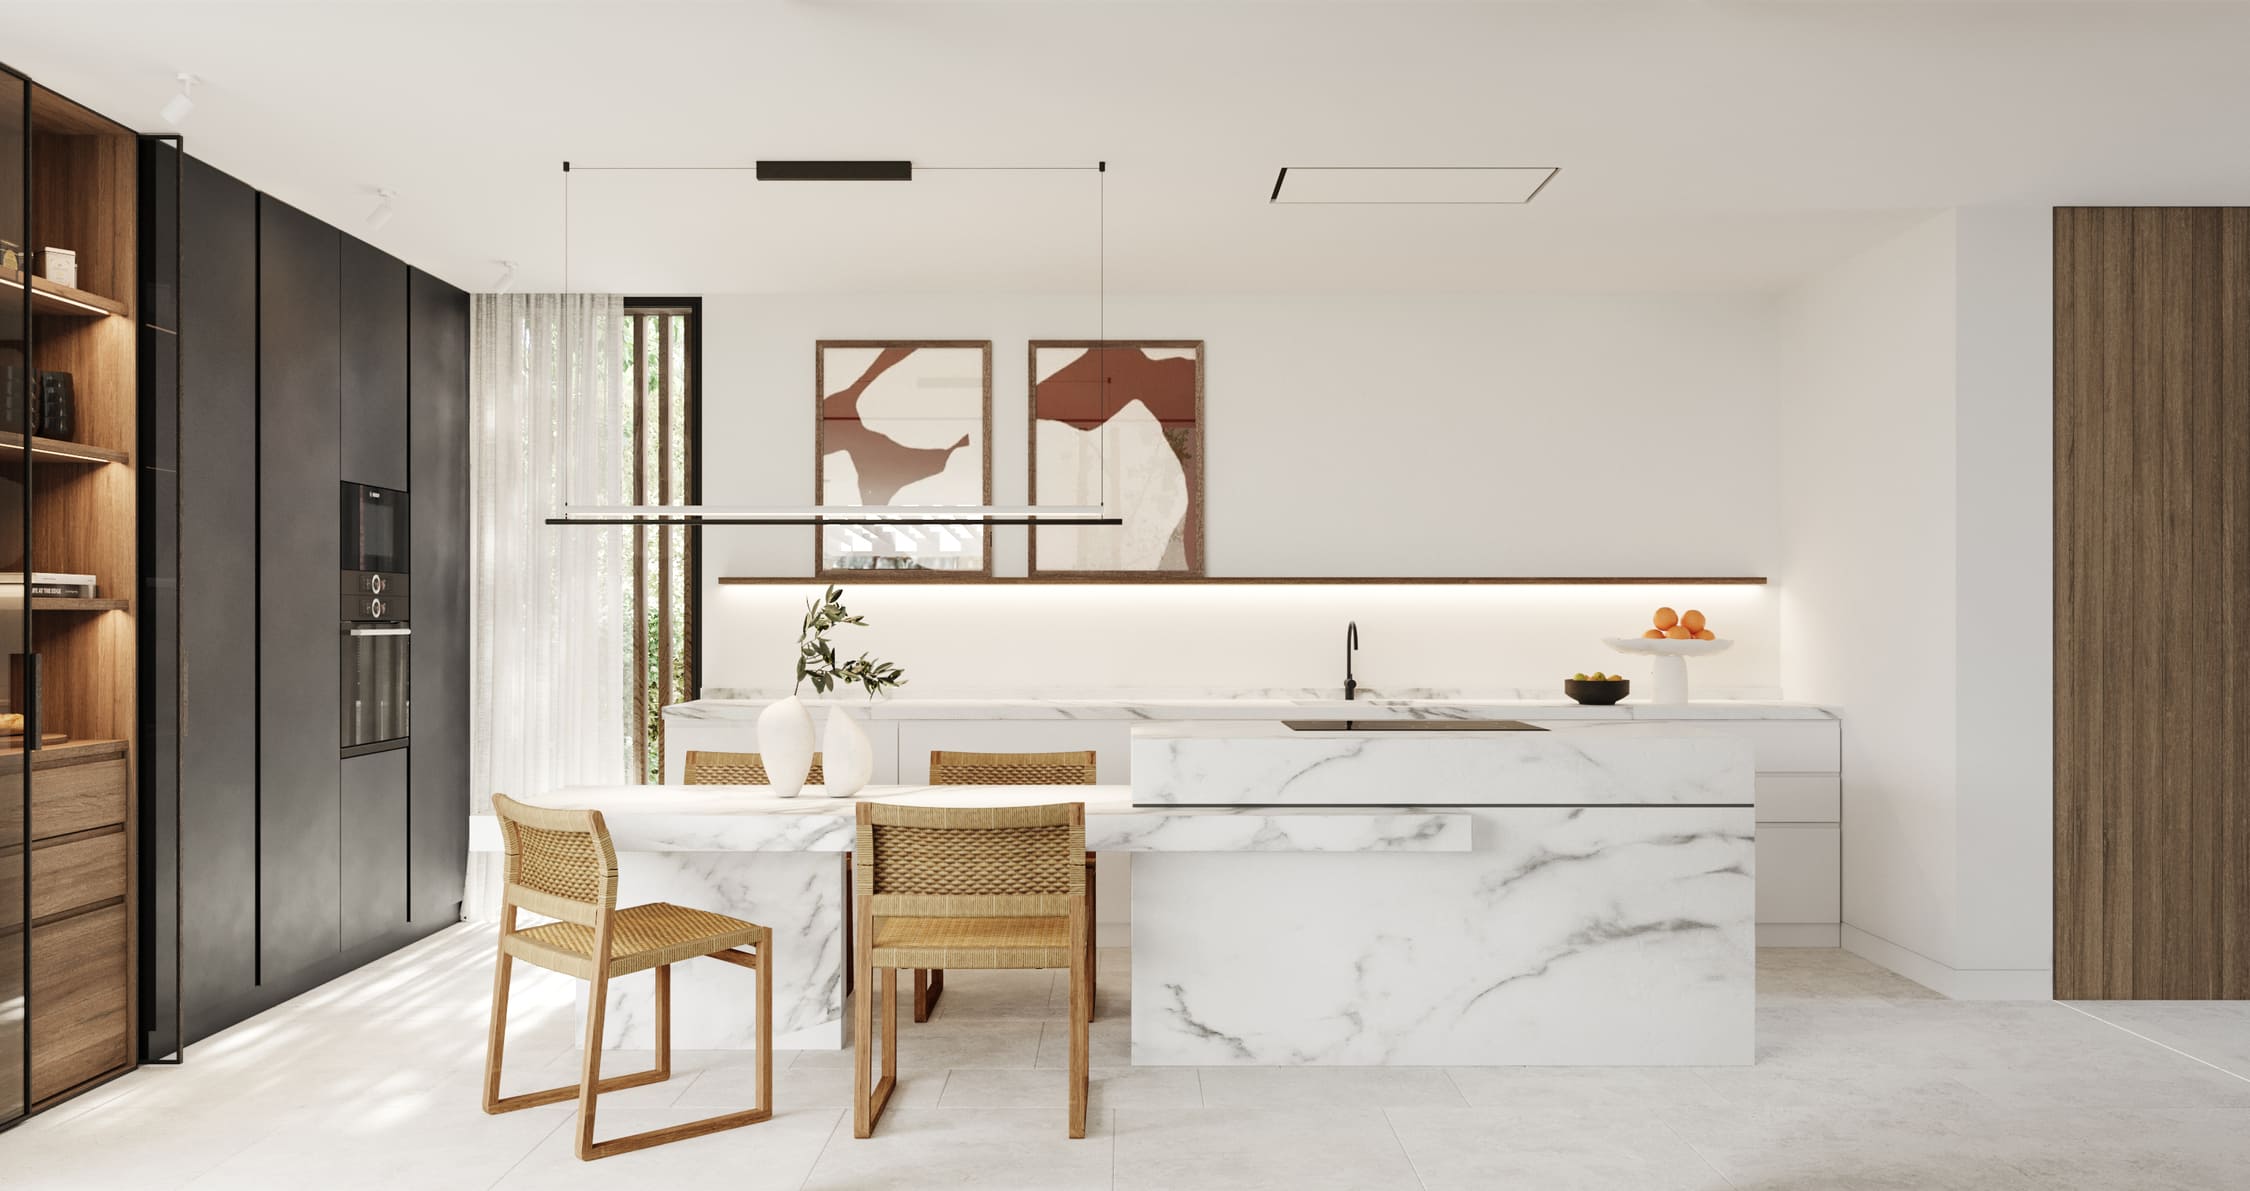 luv studio sant celoni kitchen - LUV Studio - Architecture & Design - Barcelona